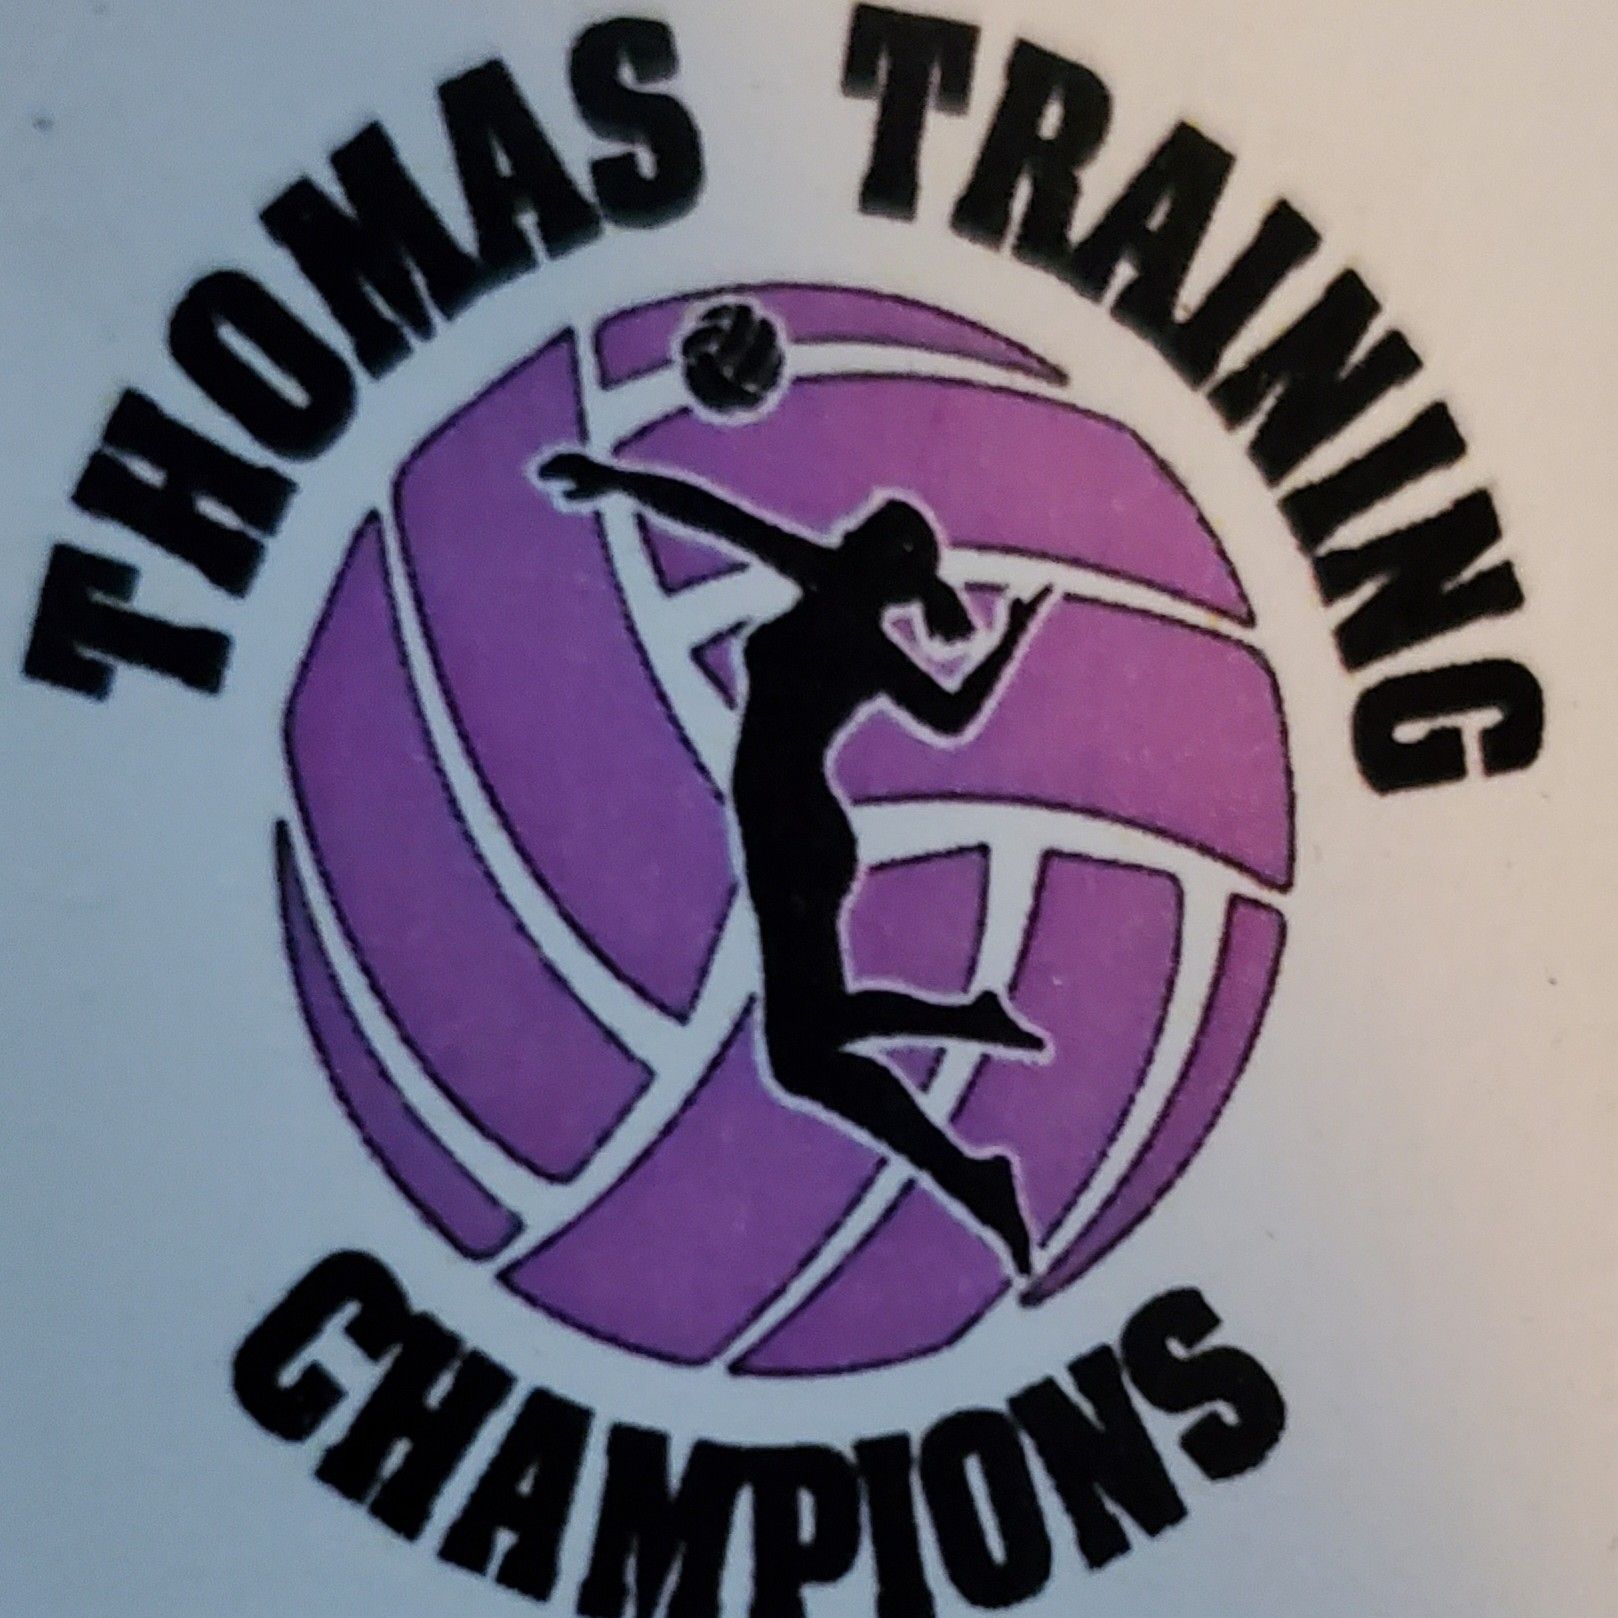 Thomas Training Champions, 415 Roxboro Rd #9692, Haw River, 27258